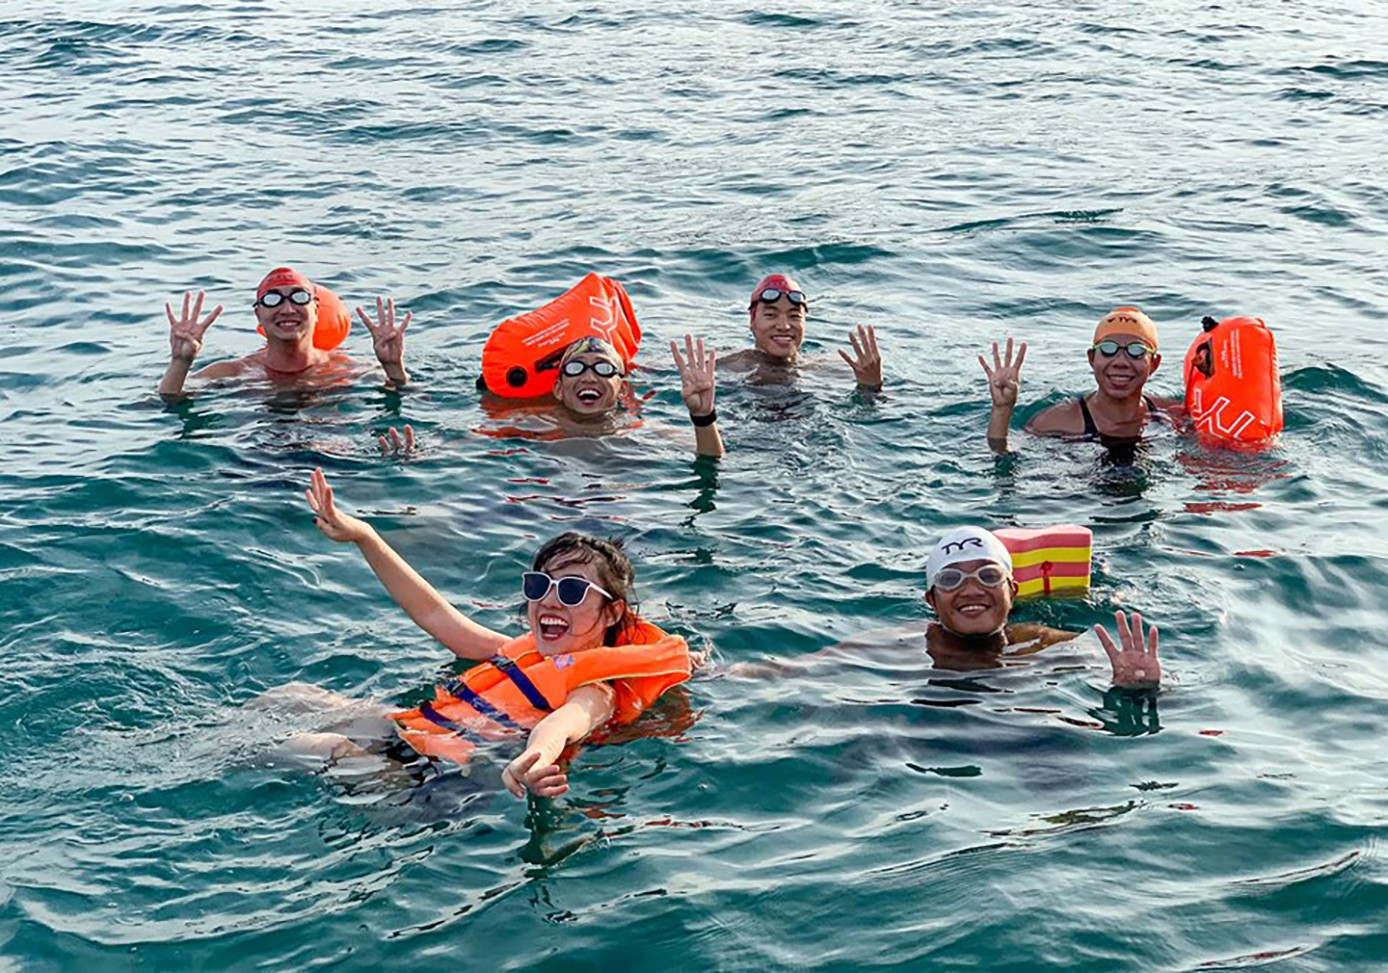 Bơi vượt 100 km biển gây quỹ giúp trẻ học bơi - Báo Người lao động